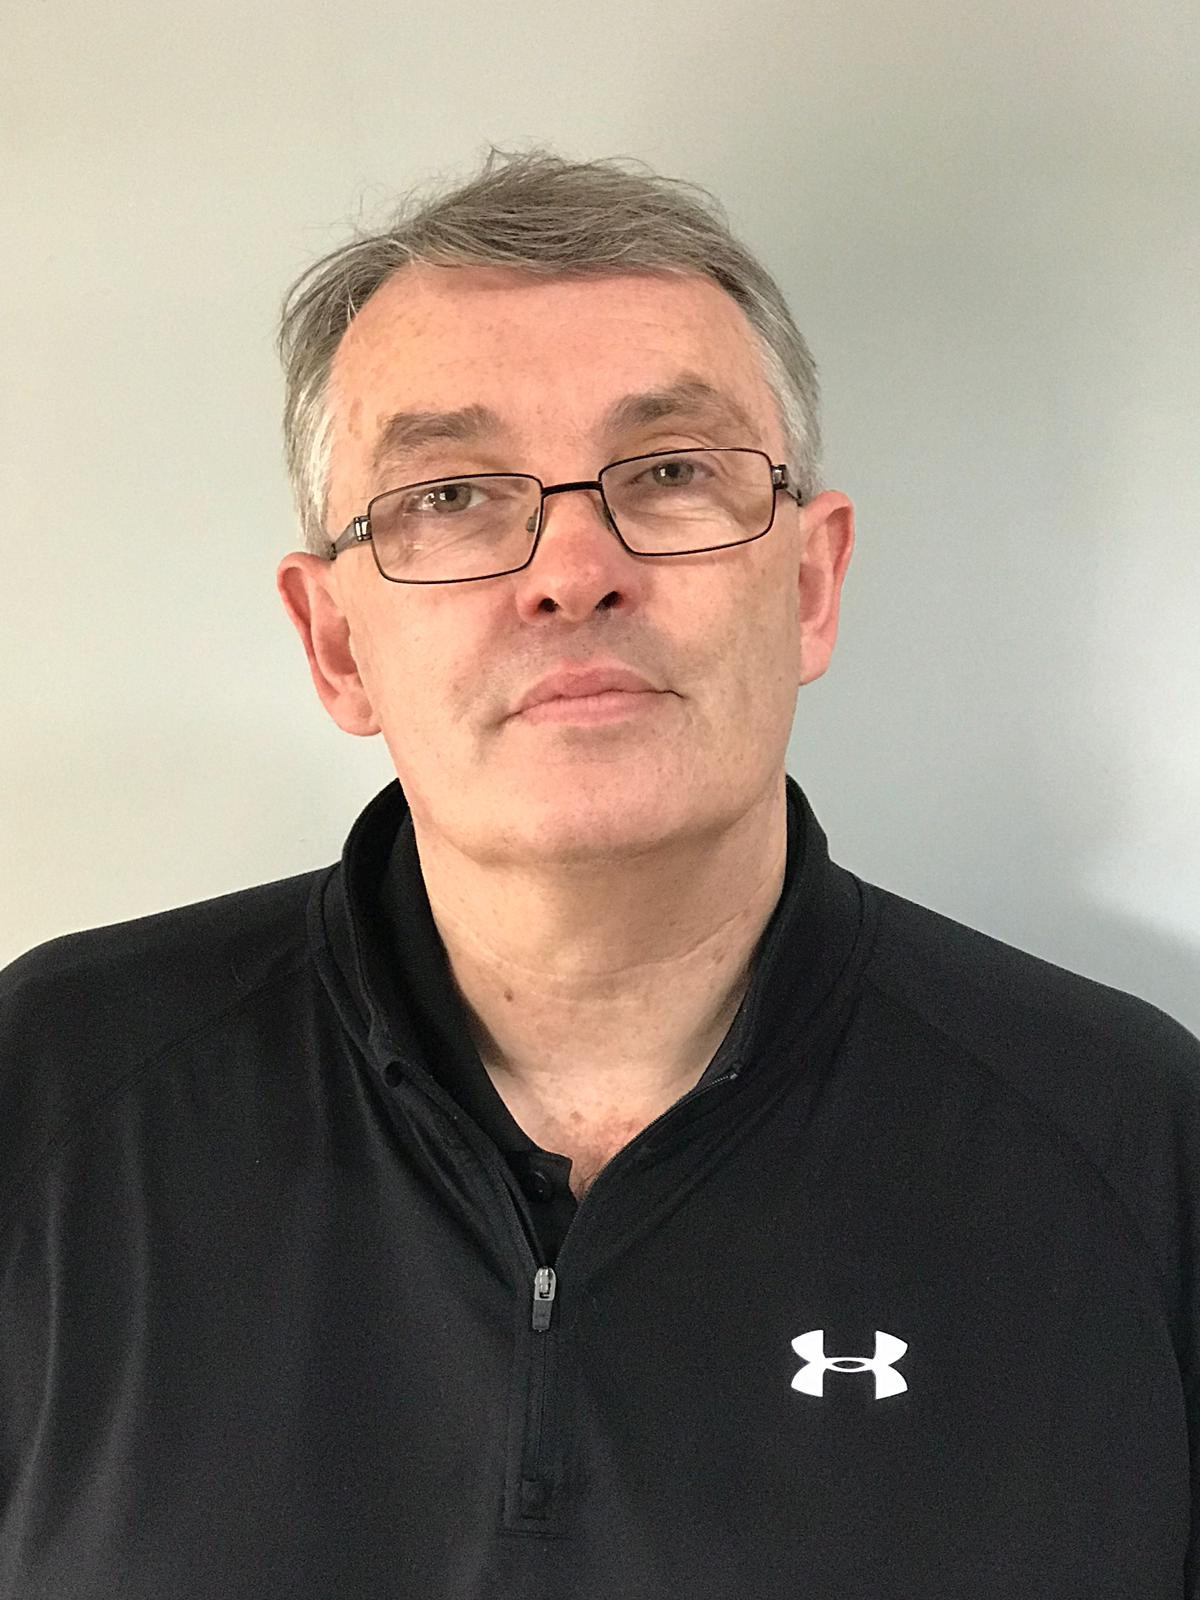 Bain appointed chief executive at England Handball